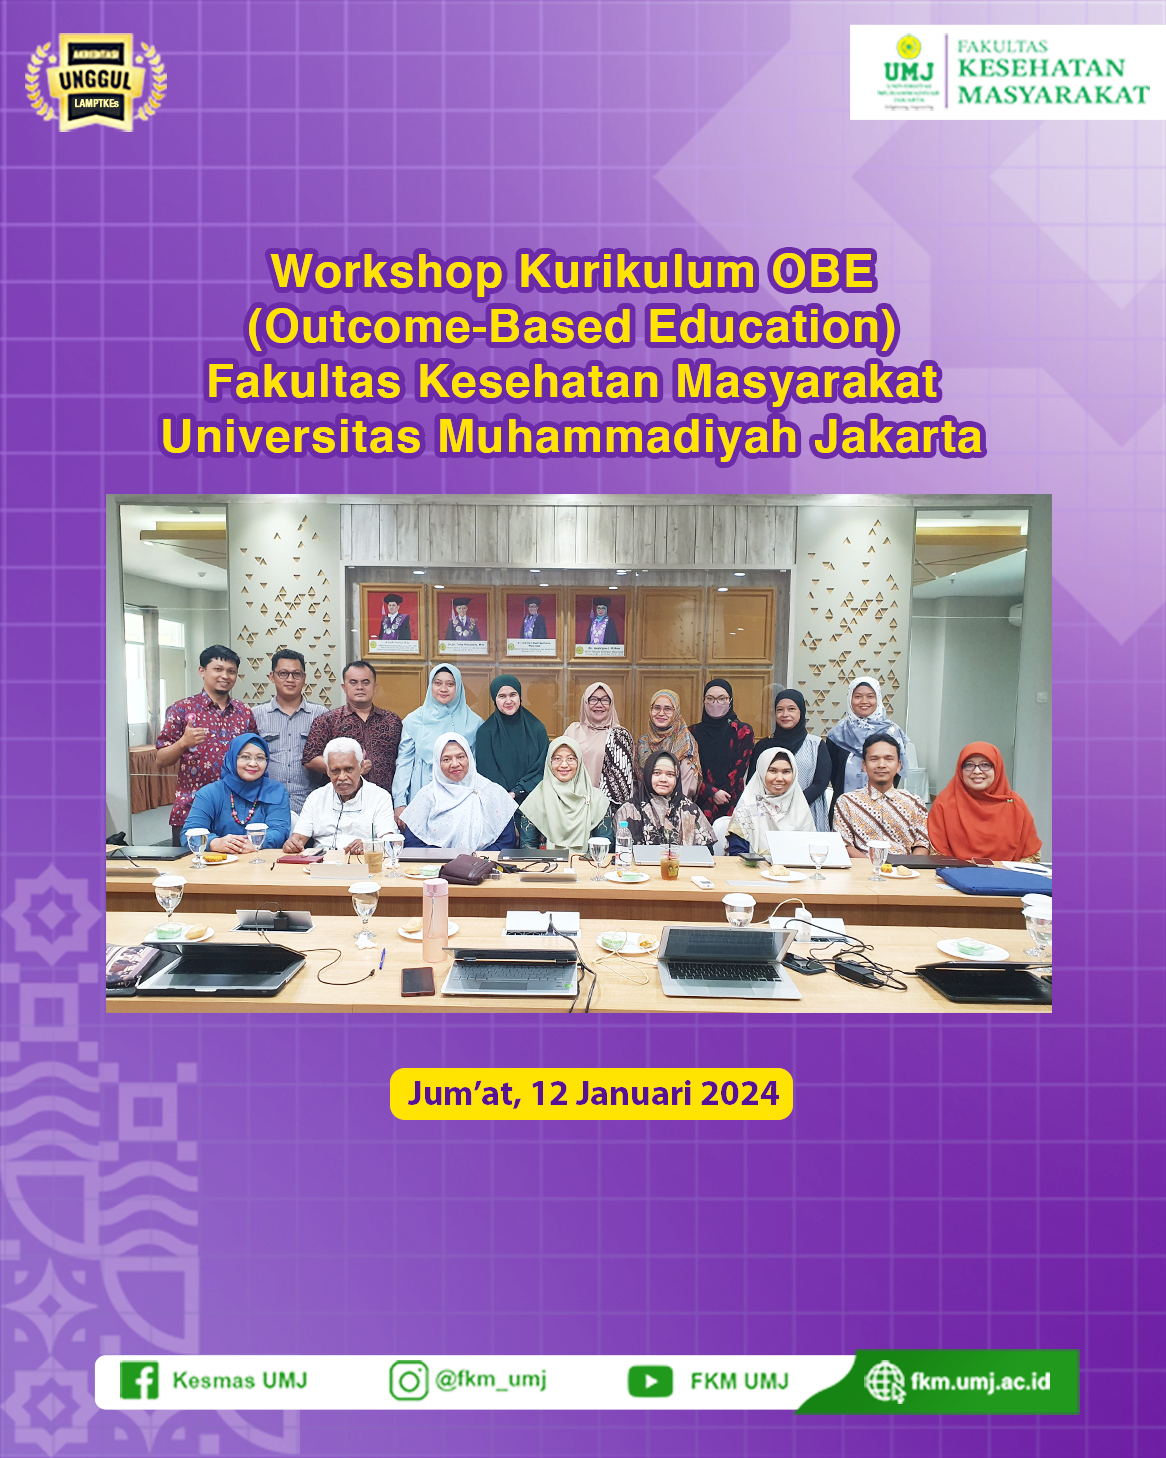 Workshop Kurikulum OBE (Outcome-Based Education) Fakultas Kesehatan Masyarakat Universitas Muhammadiyah Jakarta